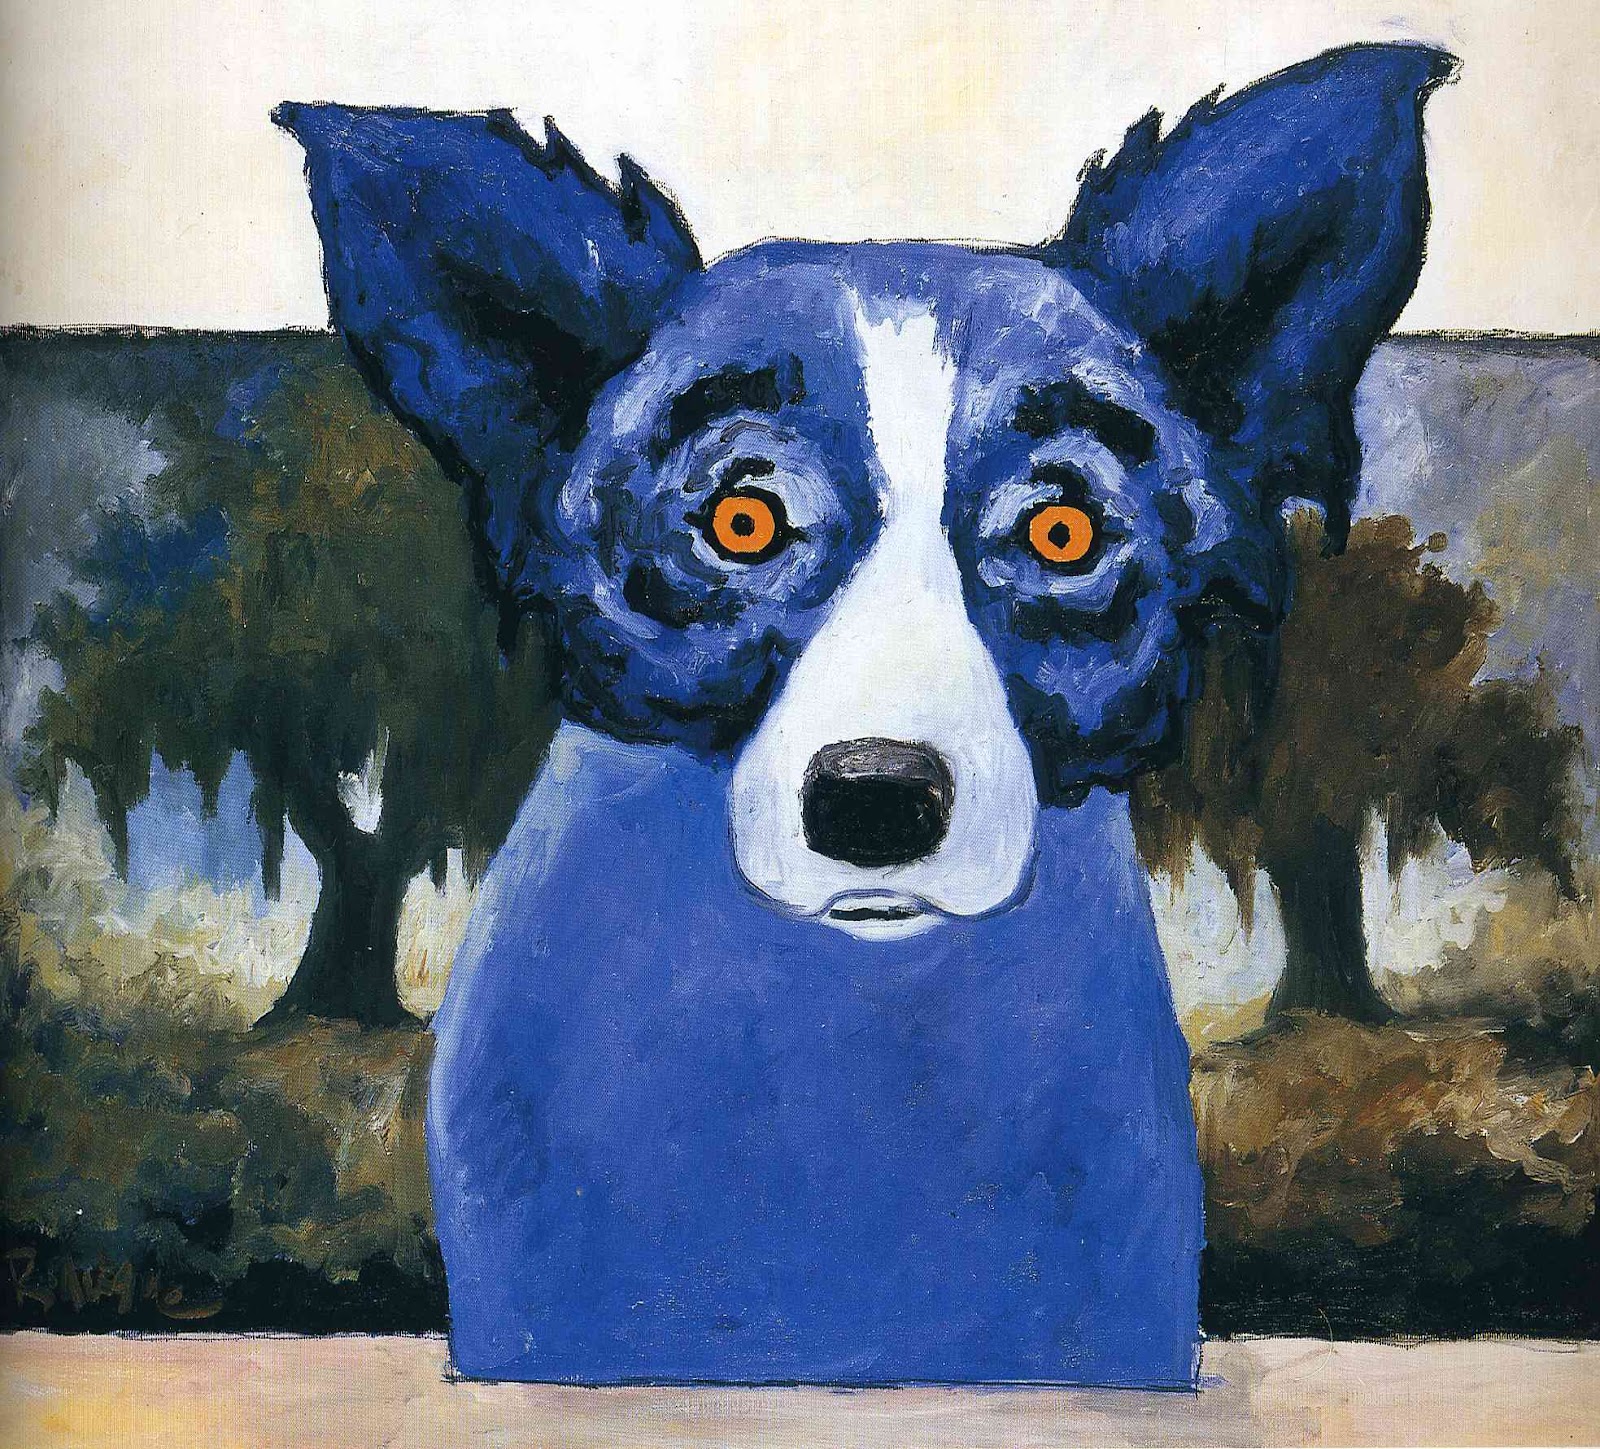 Глаза голубой собаки читать. Джордж Родригес синяя собака. Картина синяя собака. Картина с синей собакой. Желто синяя собака.